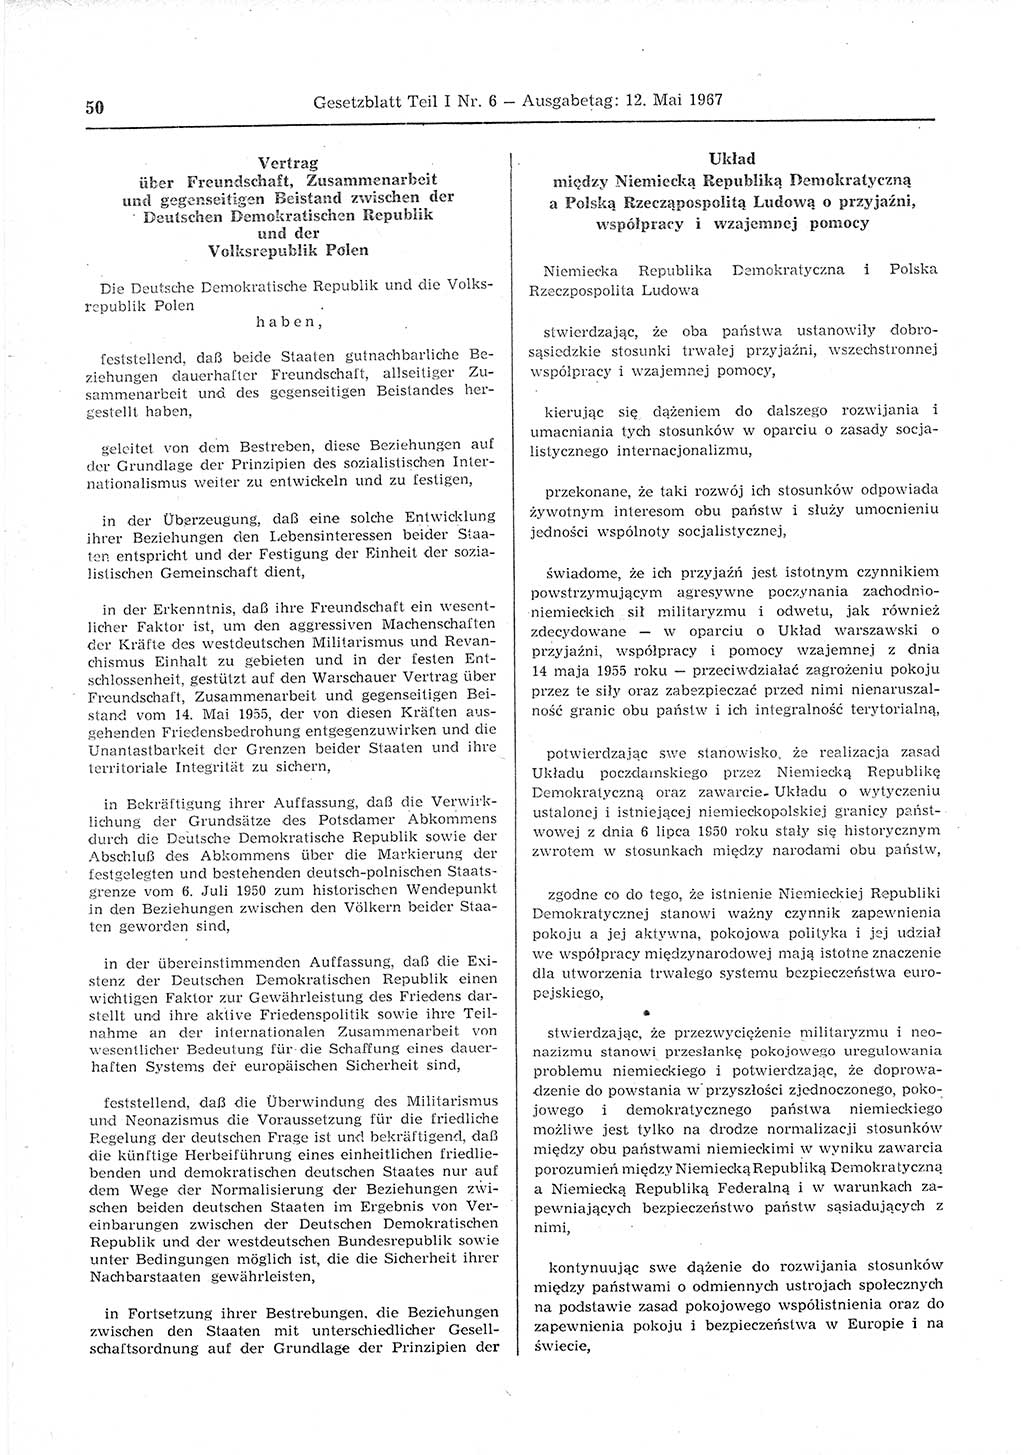 Gesetzblatt (GBl.) der Deutschen Demokratischen Republik (DDR) Teil Ⅰ 1967, Seite 50 (GBl. DDR Ⅰ 1967, S. 50)